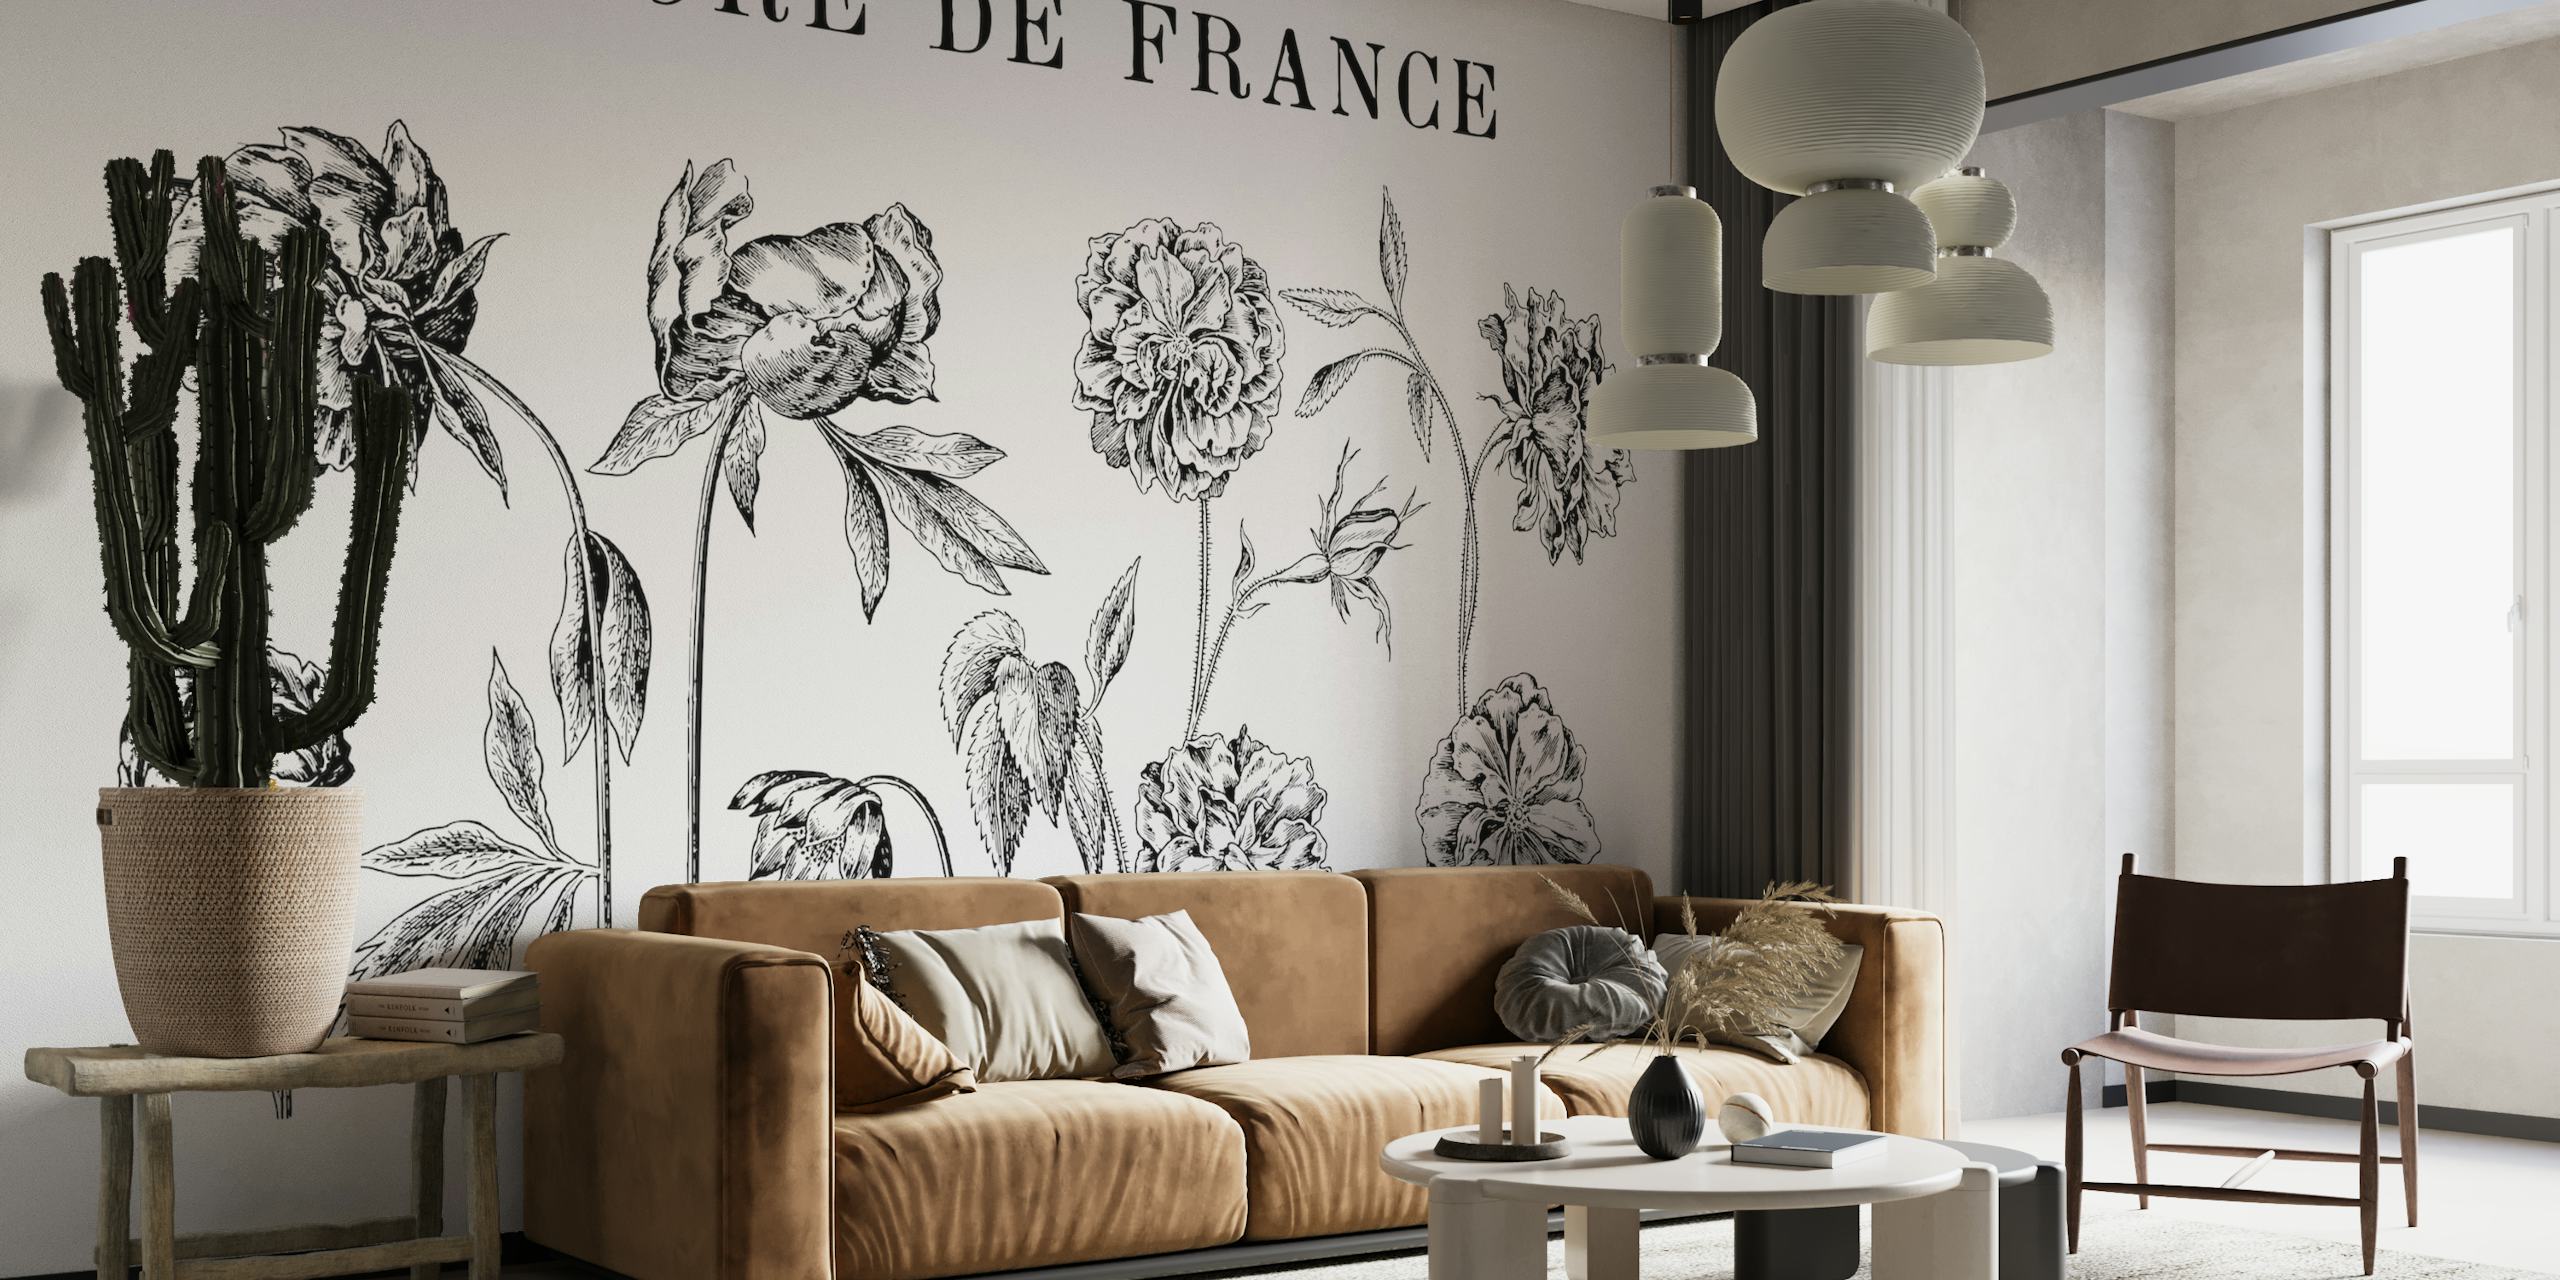 Svart-hvitt botaniske tegninger veggmaleri som viser detaljert historisk blomsterkunstverk med tittelen 'FLORE DE FRANCE'